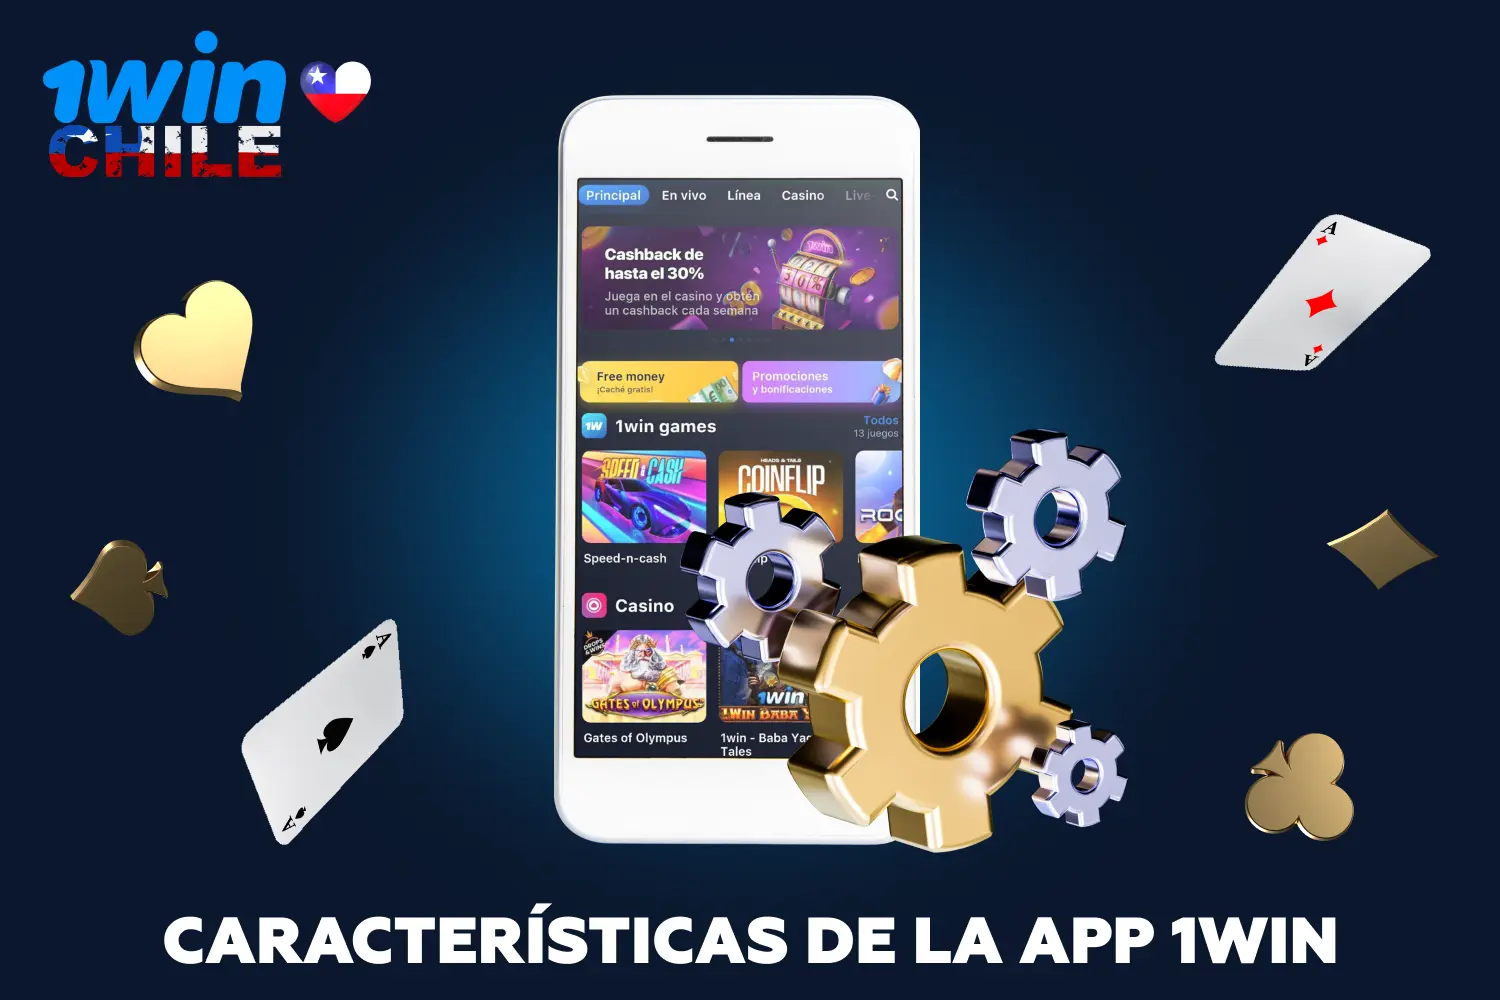 Antes de descargar e instalar la aplicación 1win en su smartphone, se recomienda a los usuarios de Chile que se familiaricen con las características de este programa